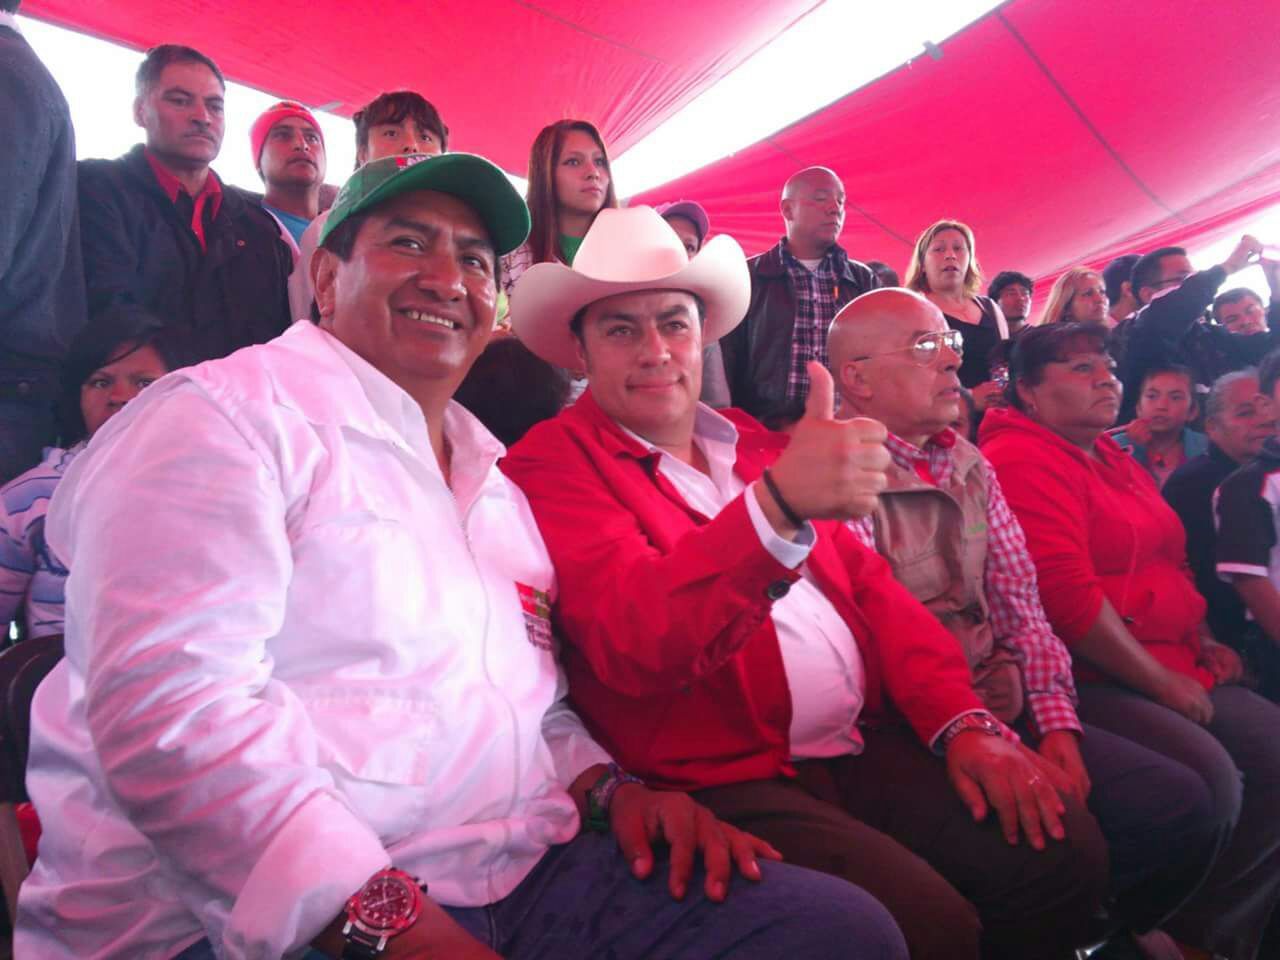 Alfredo del Mazo el mejor candidato para gobernar; Edomex no merece improvisados ni oportunistas: Reynaldo Navarro